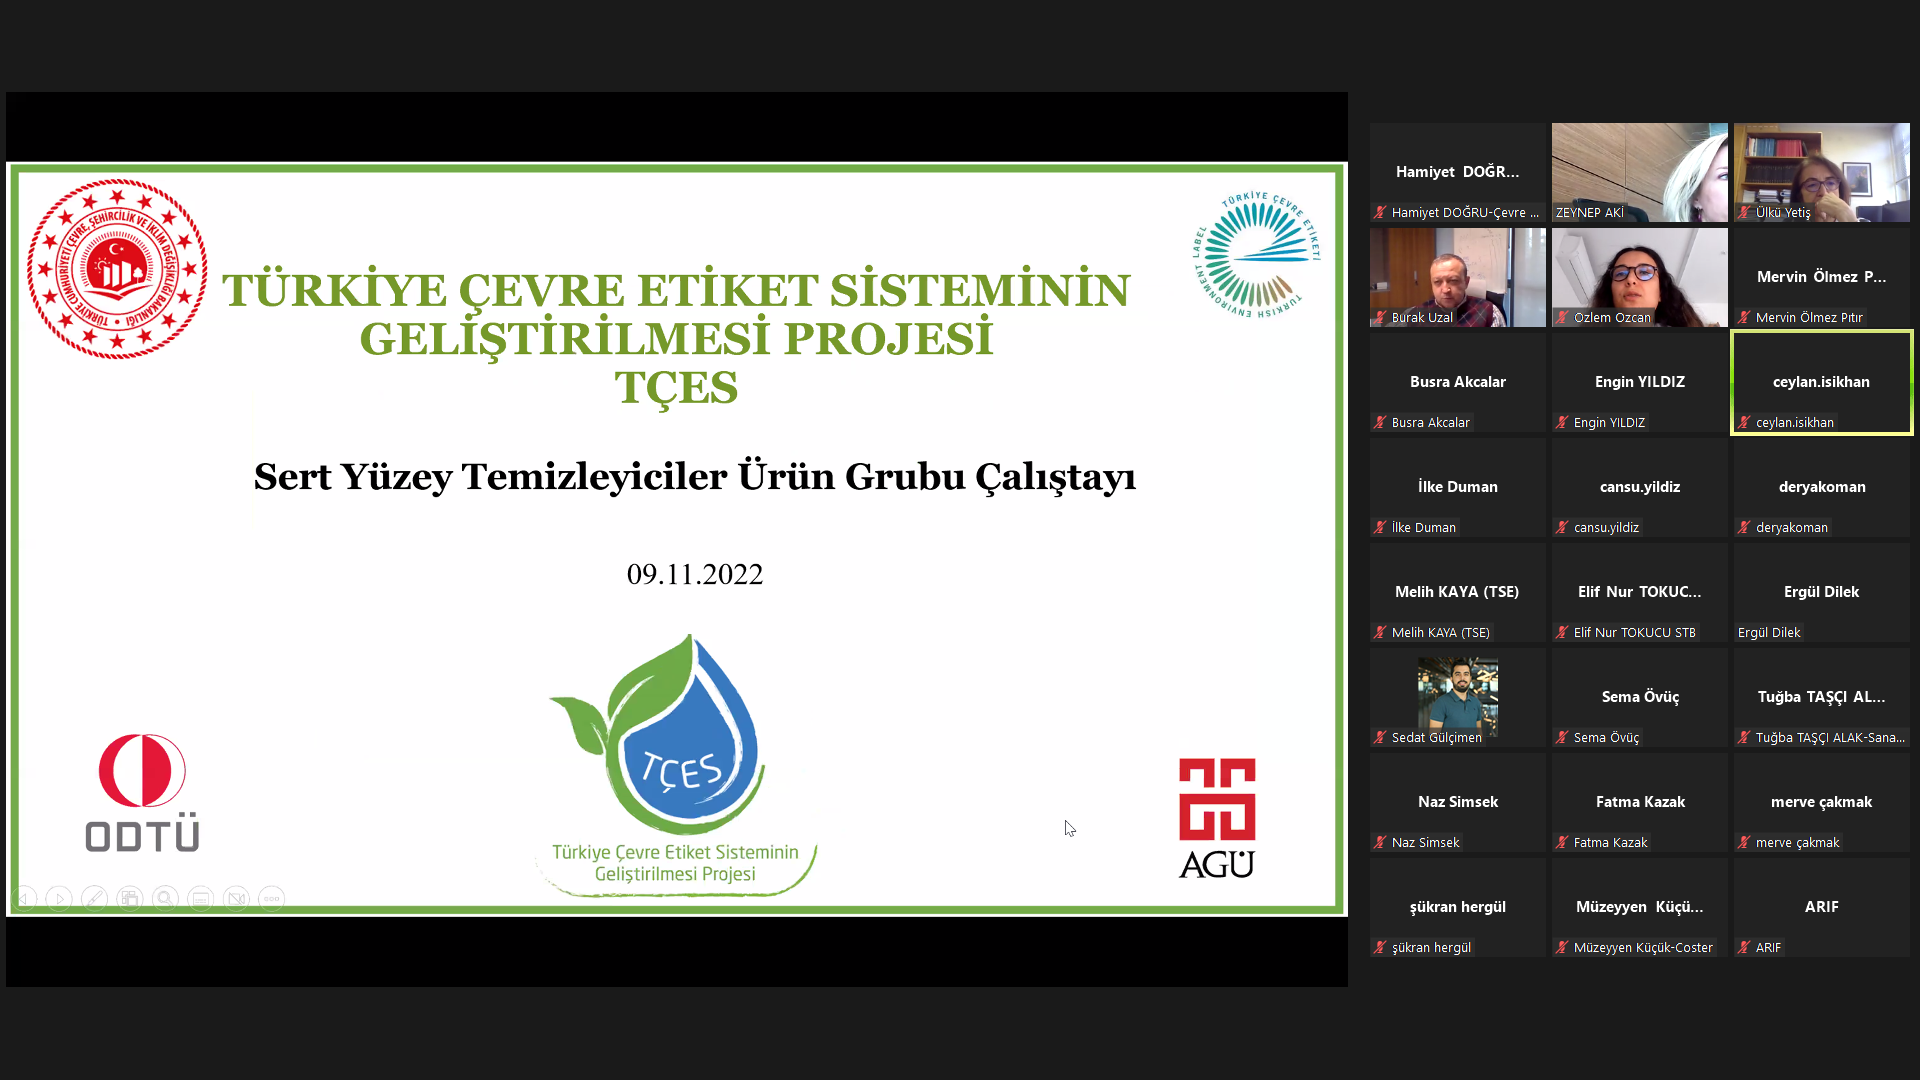 Türkiye Çevre Etiketi Sisteminin (TÇES) Geliştirilmesi Projesi Kapsamında “TÇES Projesi Sert Yüzey Temizleyiciler Sektörü Çalıştayı